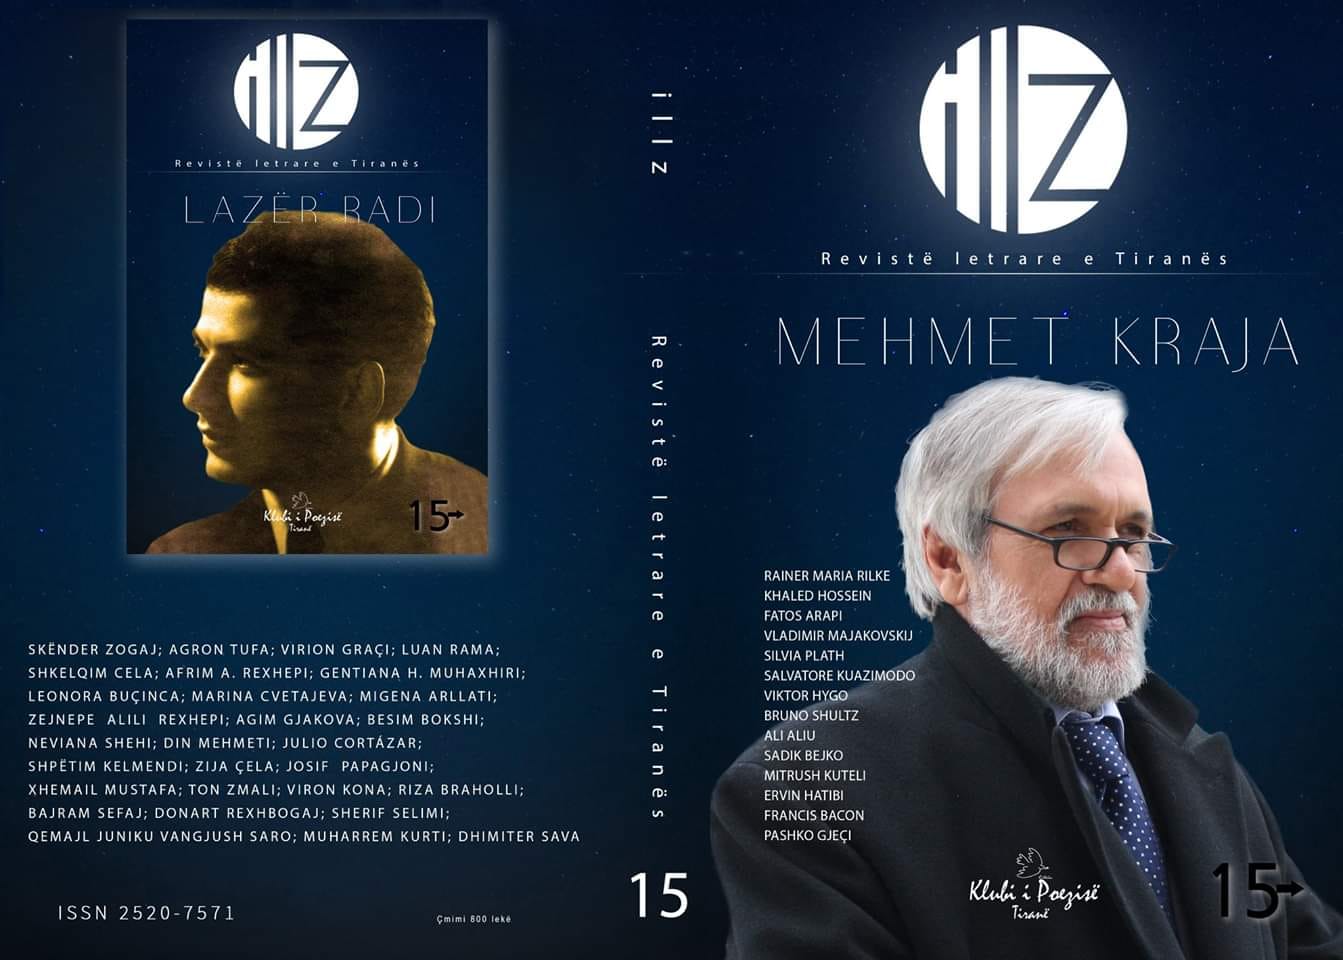  “Illz”, Numri 15 - Revistë letrare e Tiranës